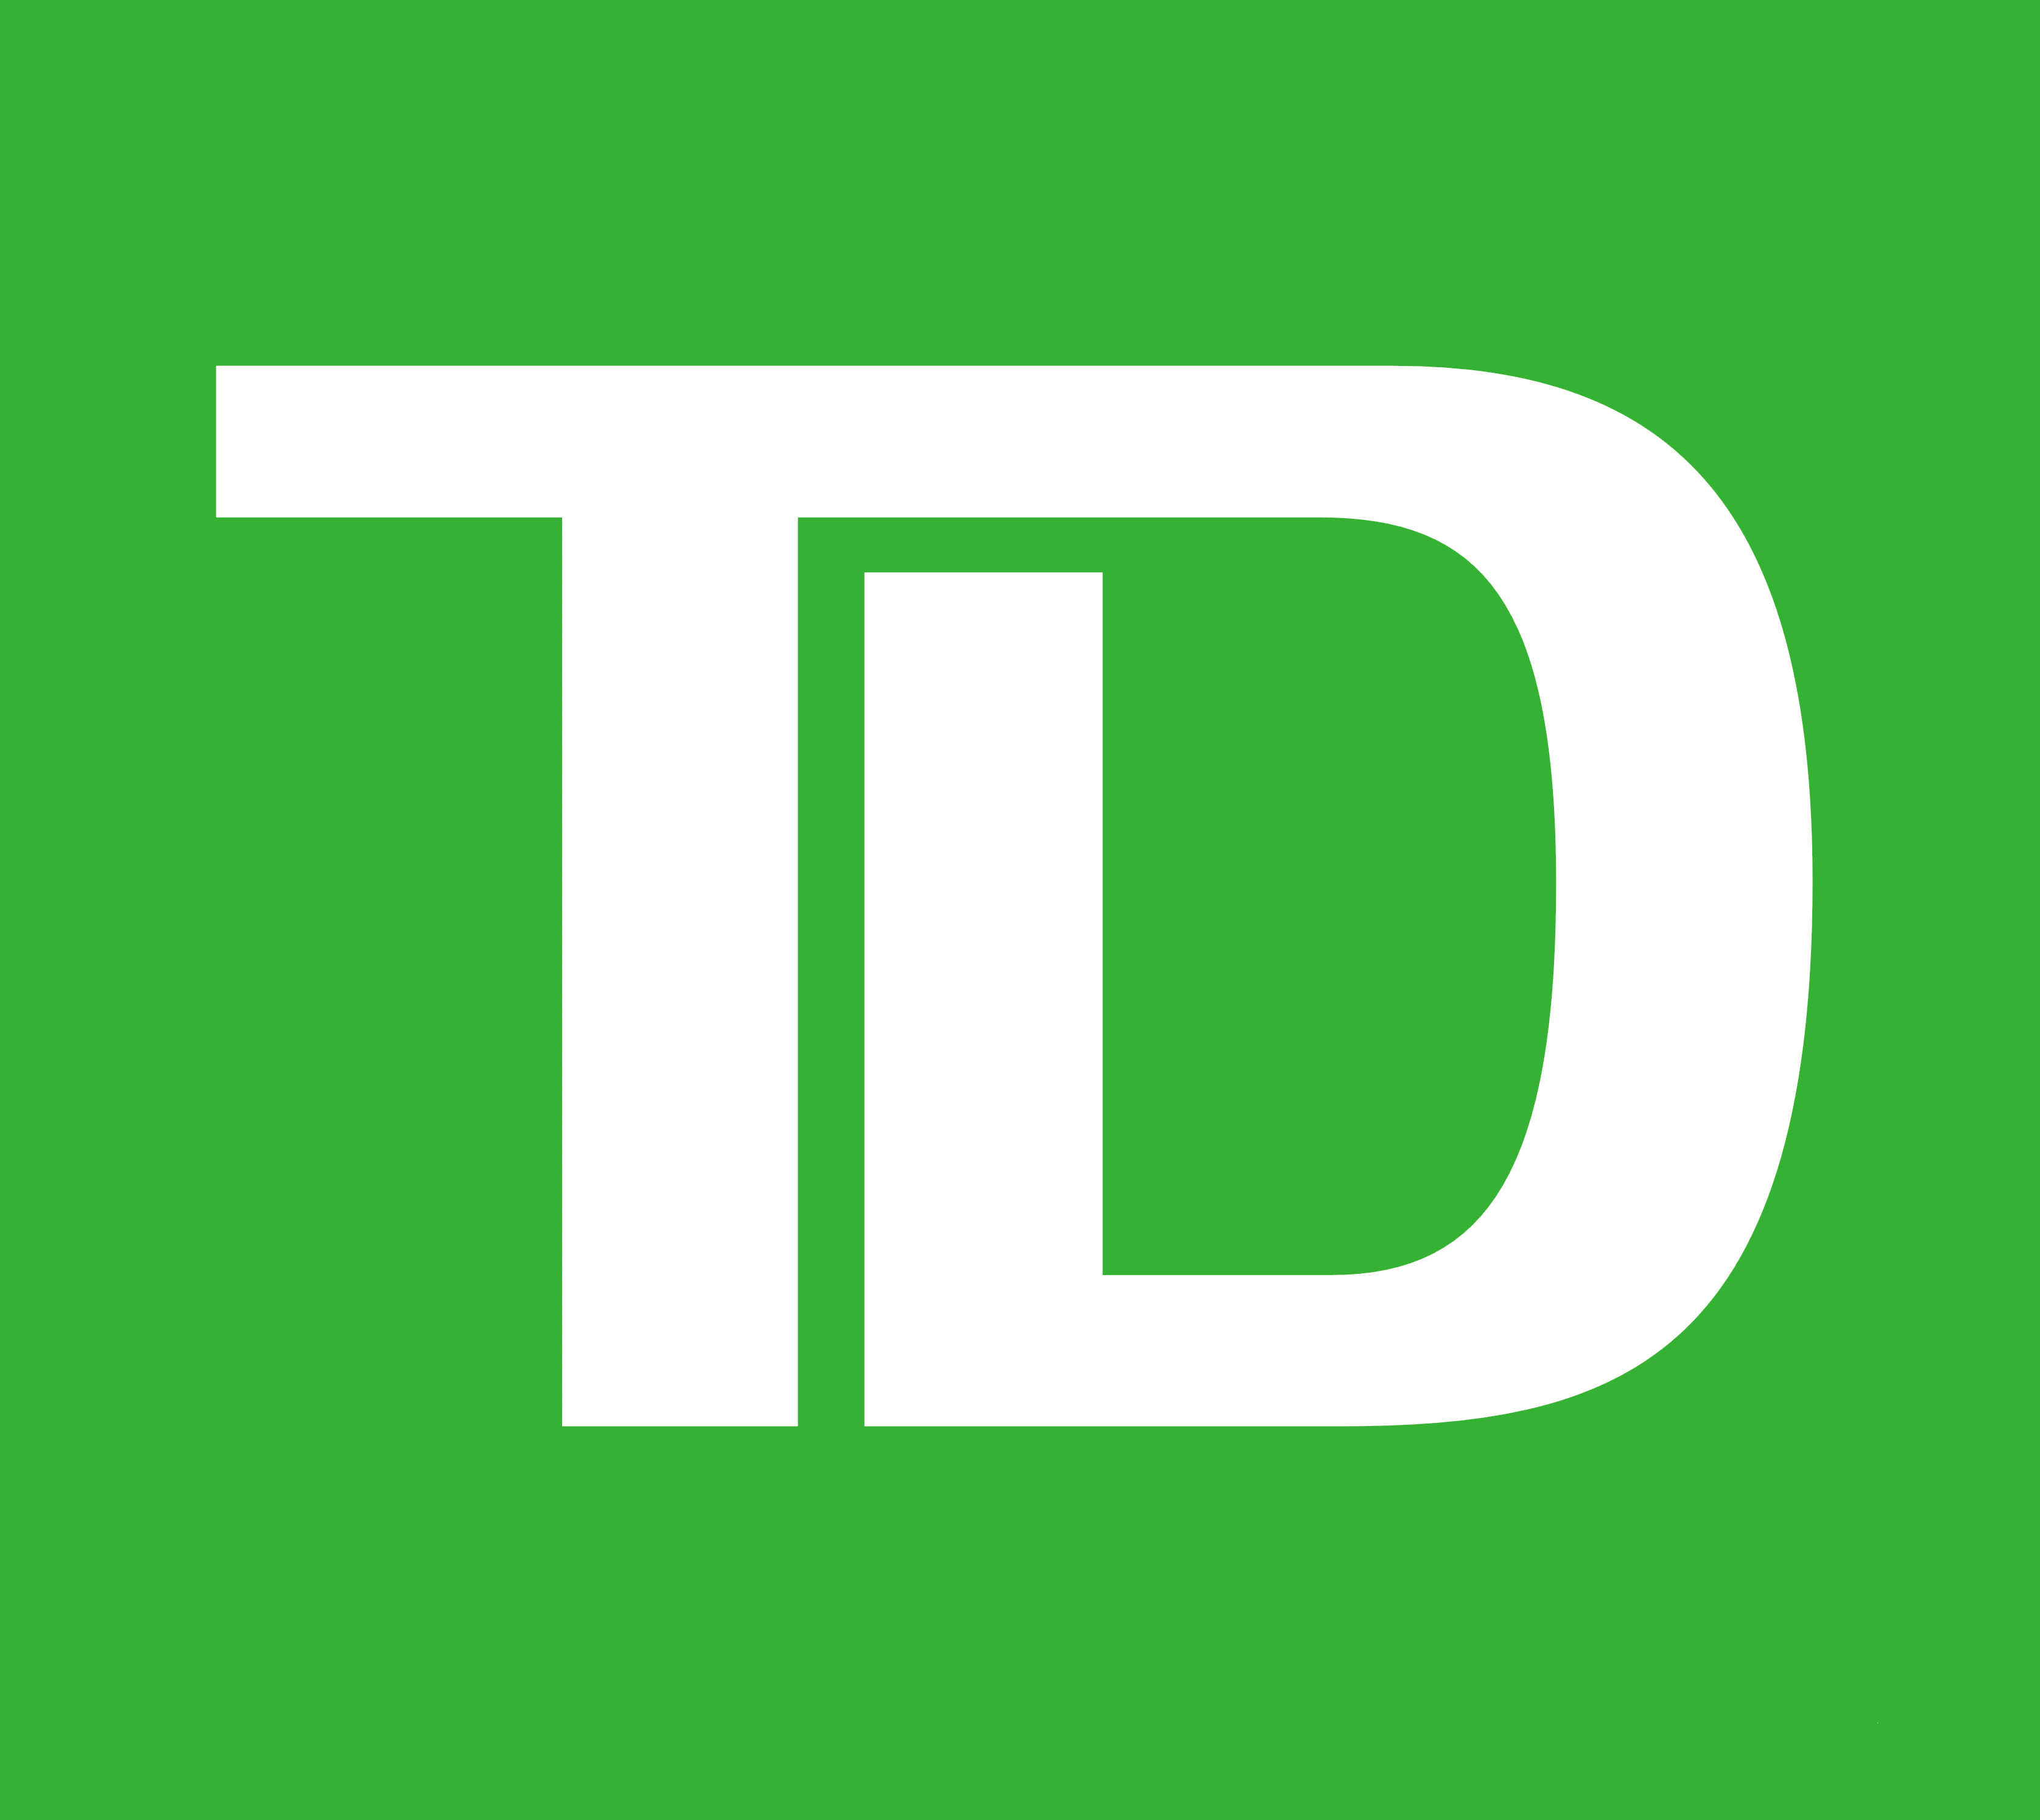 TD Bank logo, logotype